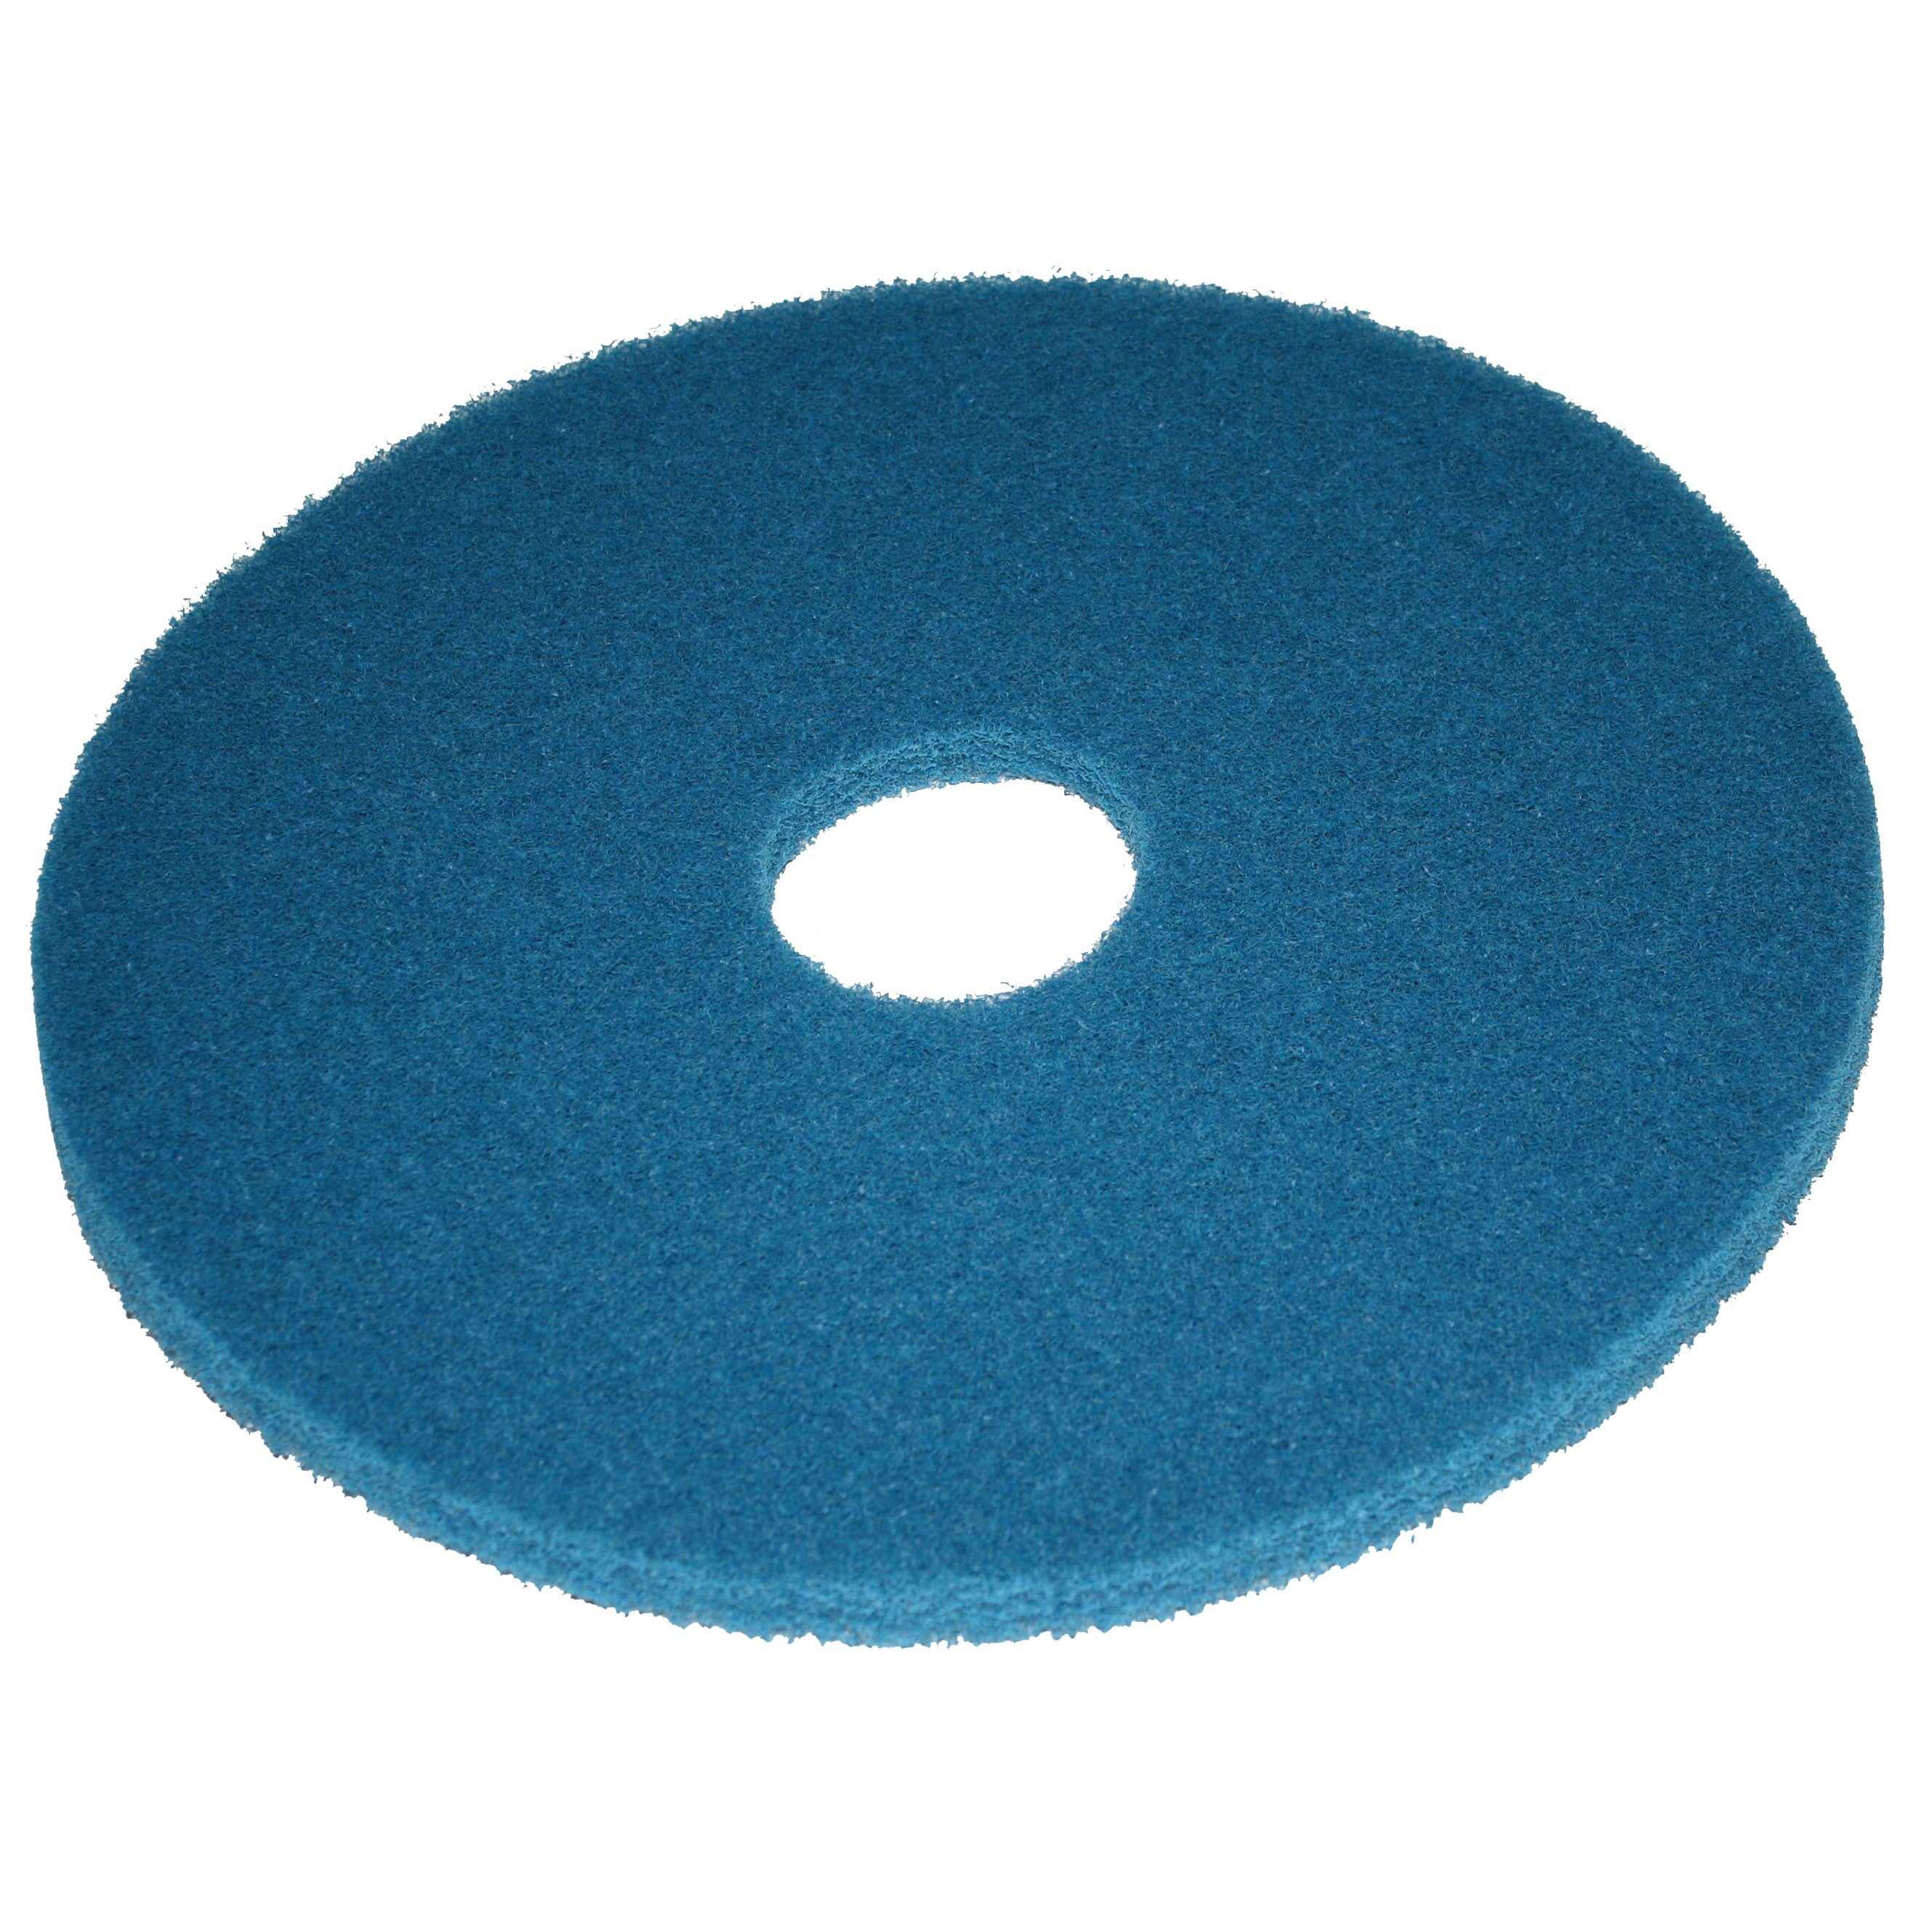 Pad bleu, Ø 406 mm, polyester